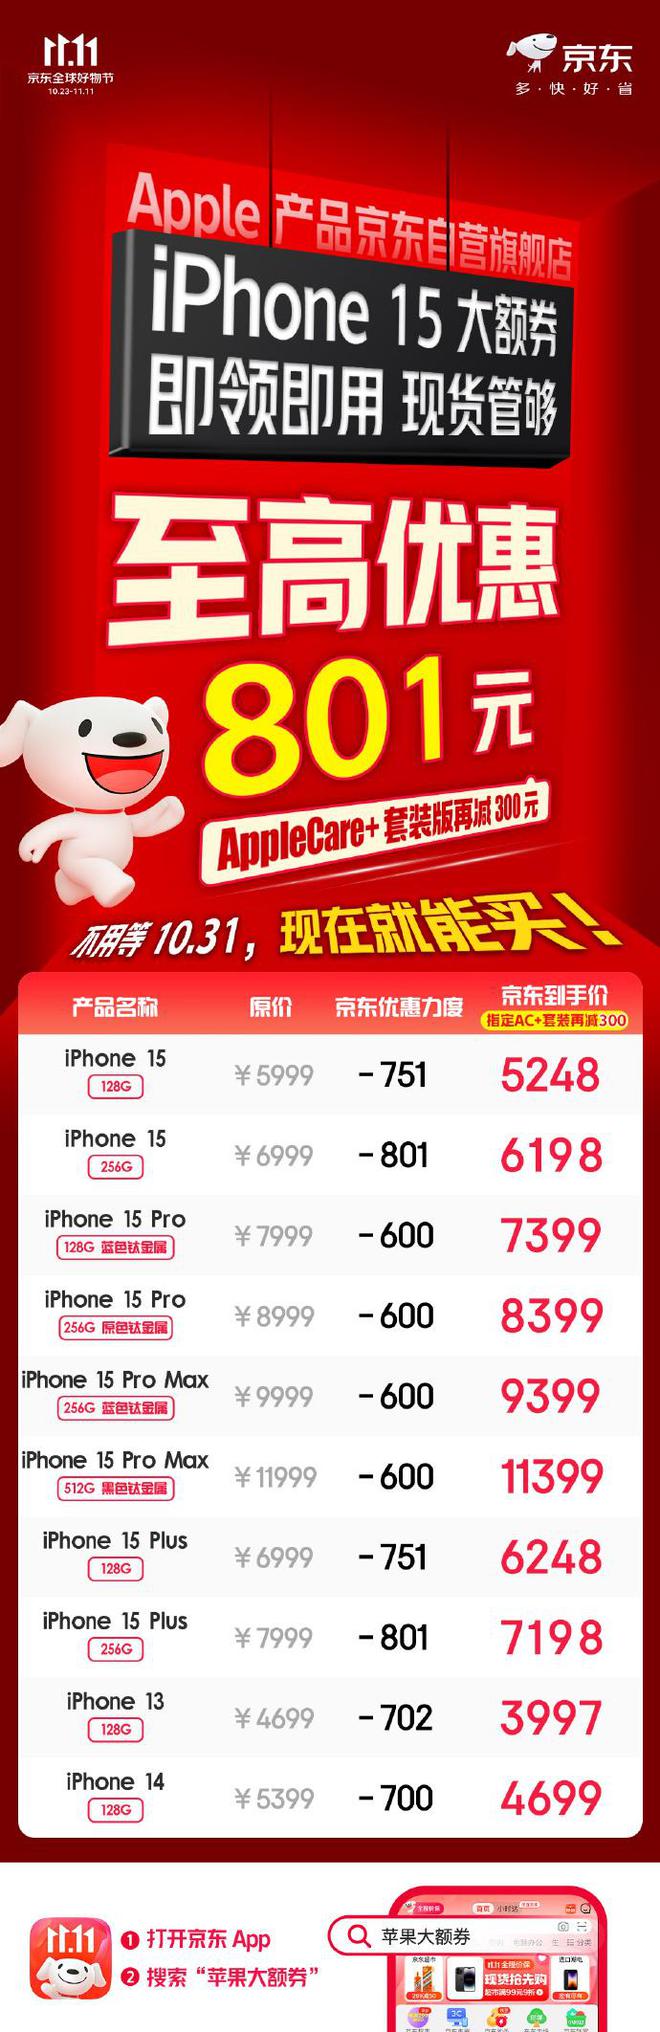 京东苹果 iPhone 15 系列机型最高降价 801 元，到手 5248 元起